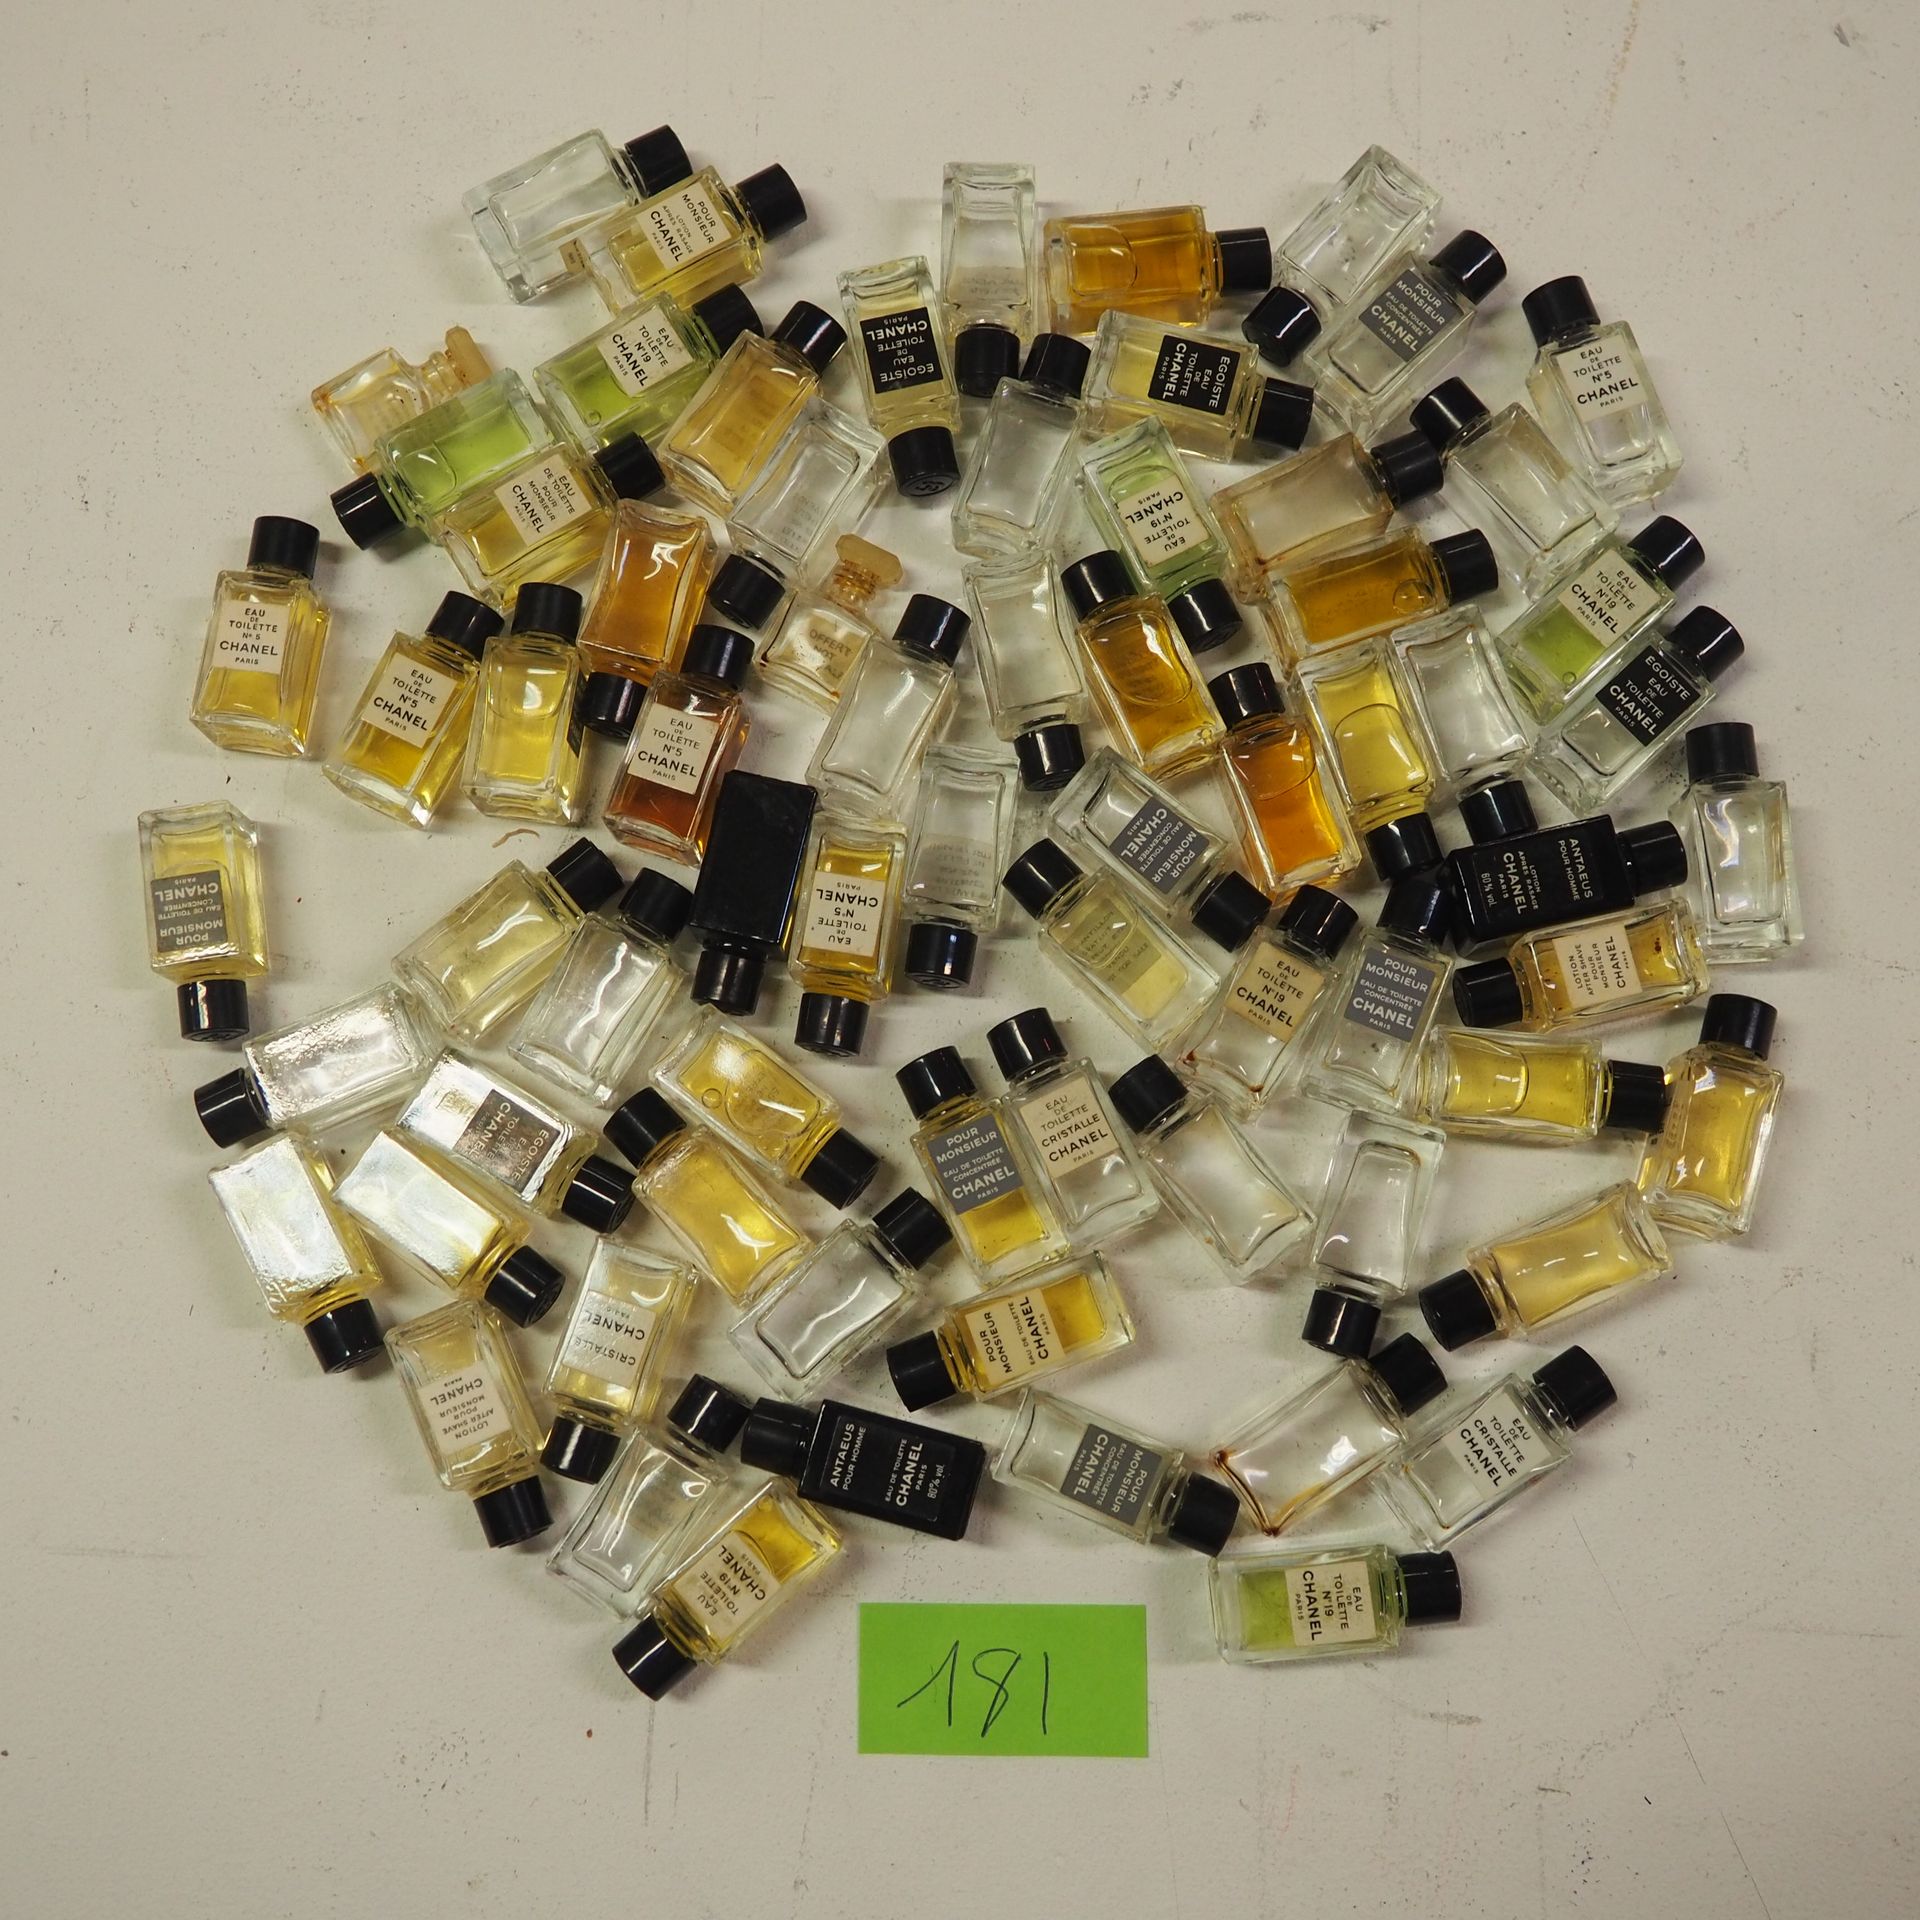 CHANEL Chanel: Lote de 70 miniaturas de perfumes y eaux de toilettes antiguas